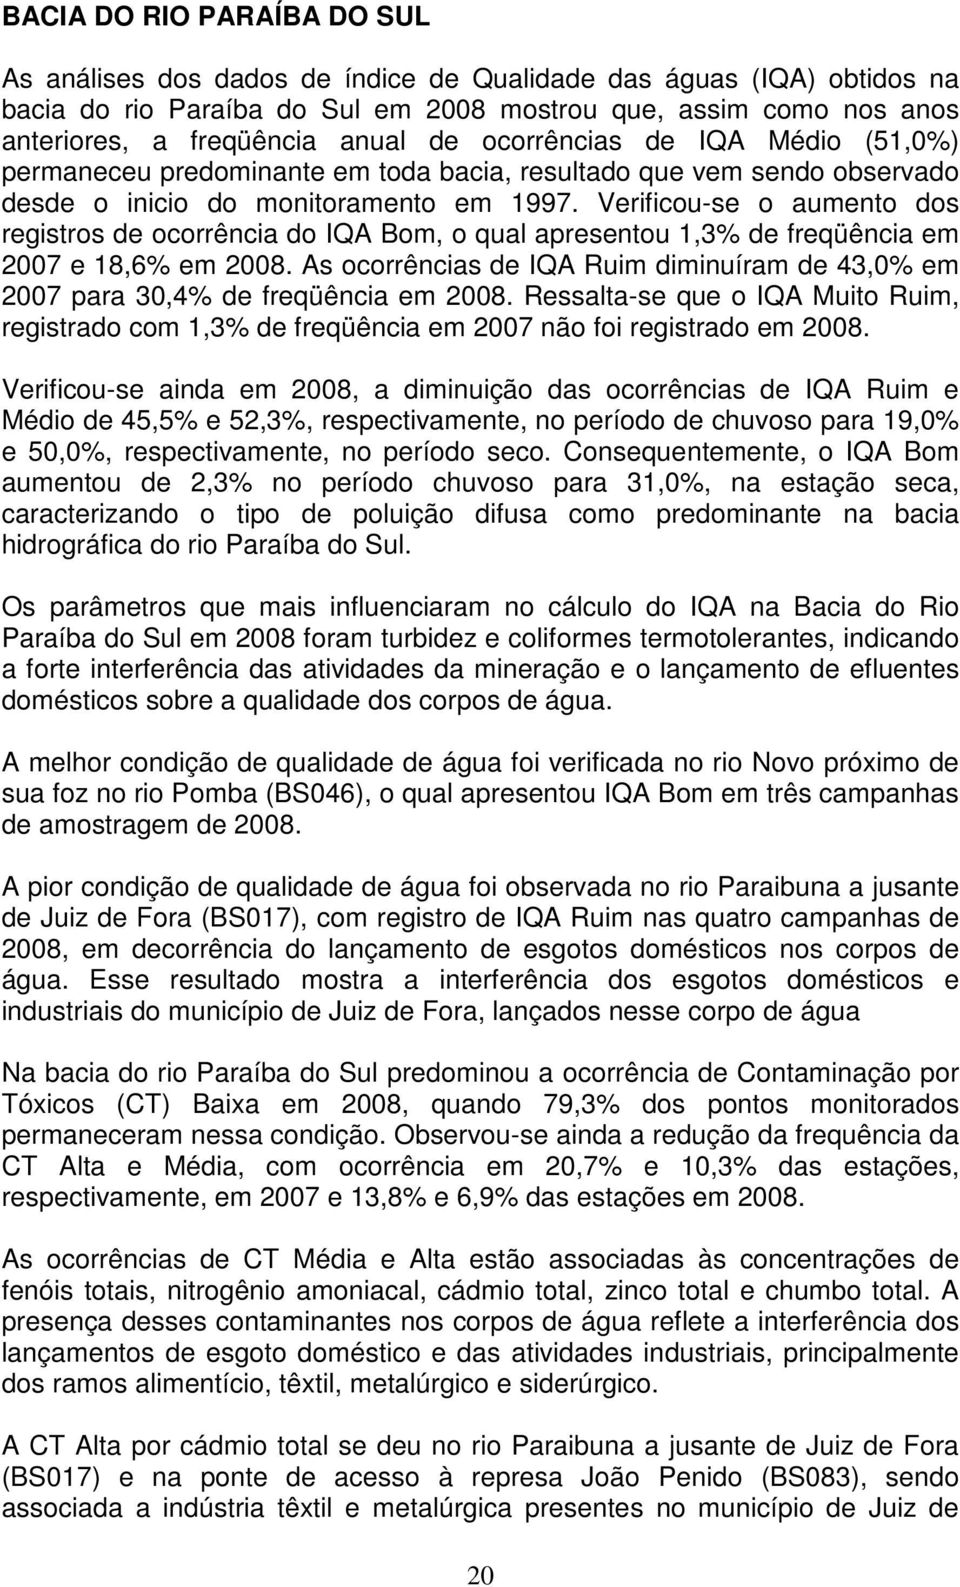 Verificou-se o aumento dos registros de ocorrência do IQA Bom, o qual apresentou 1,3% de freqüência em 2007 e 18,6% em 2008.